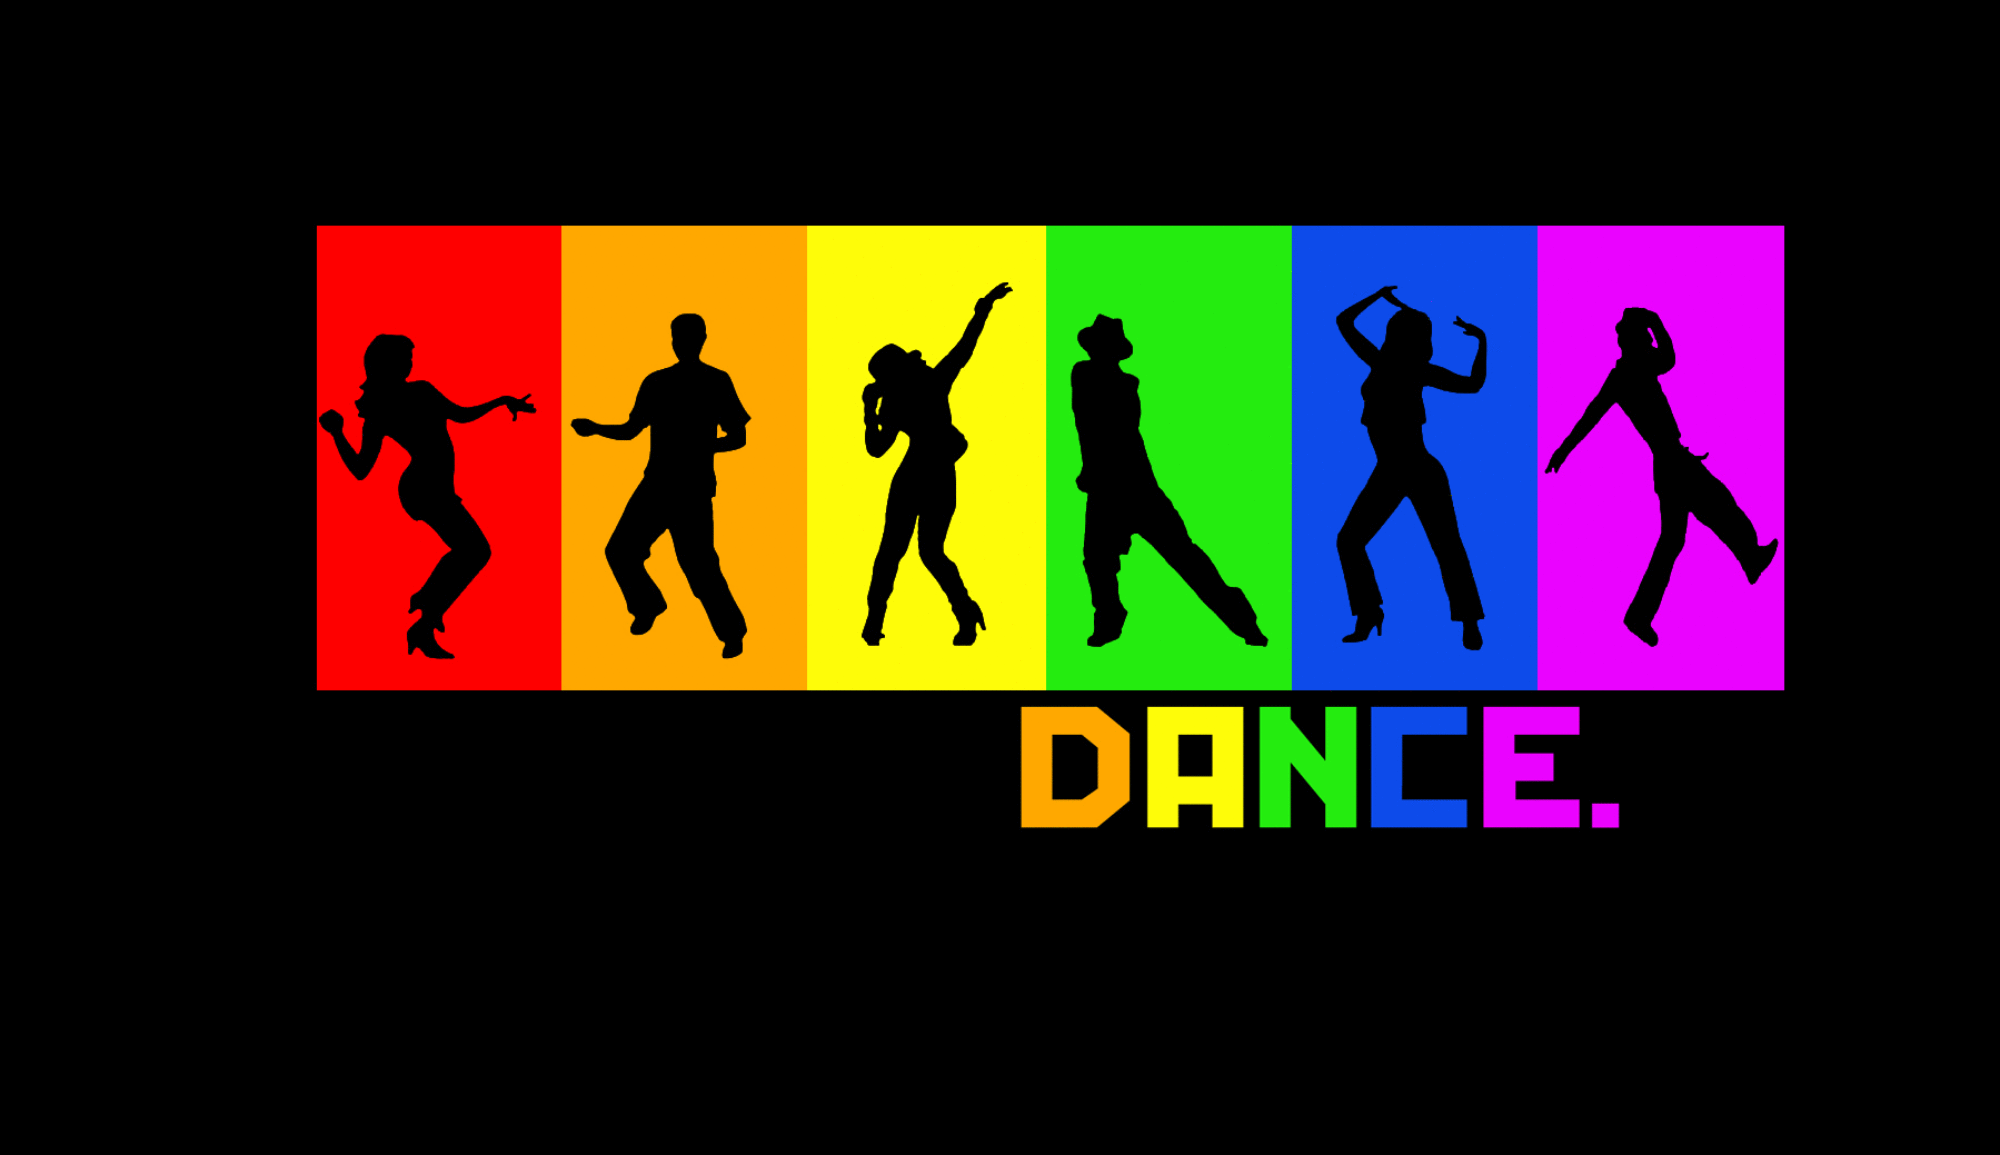  Dance